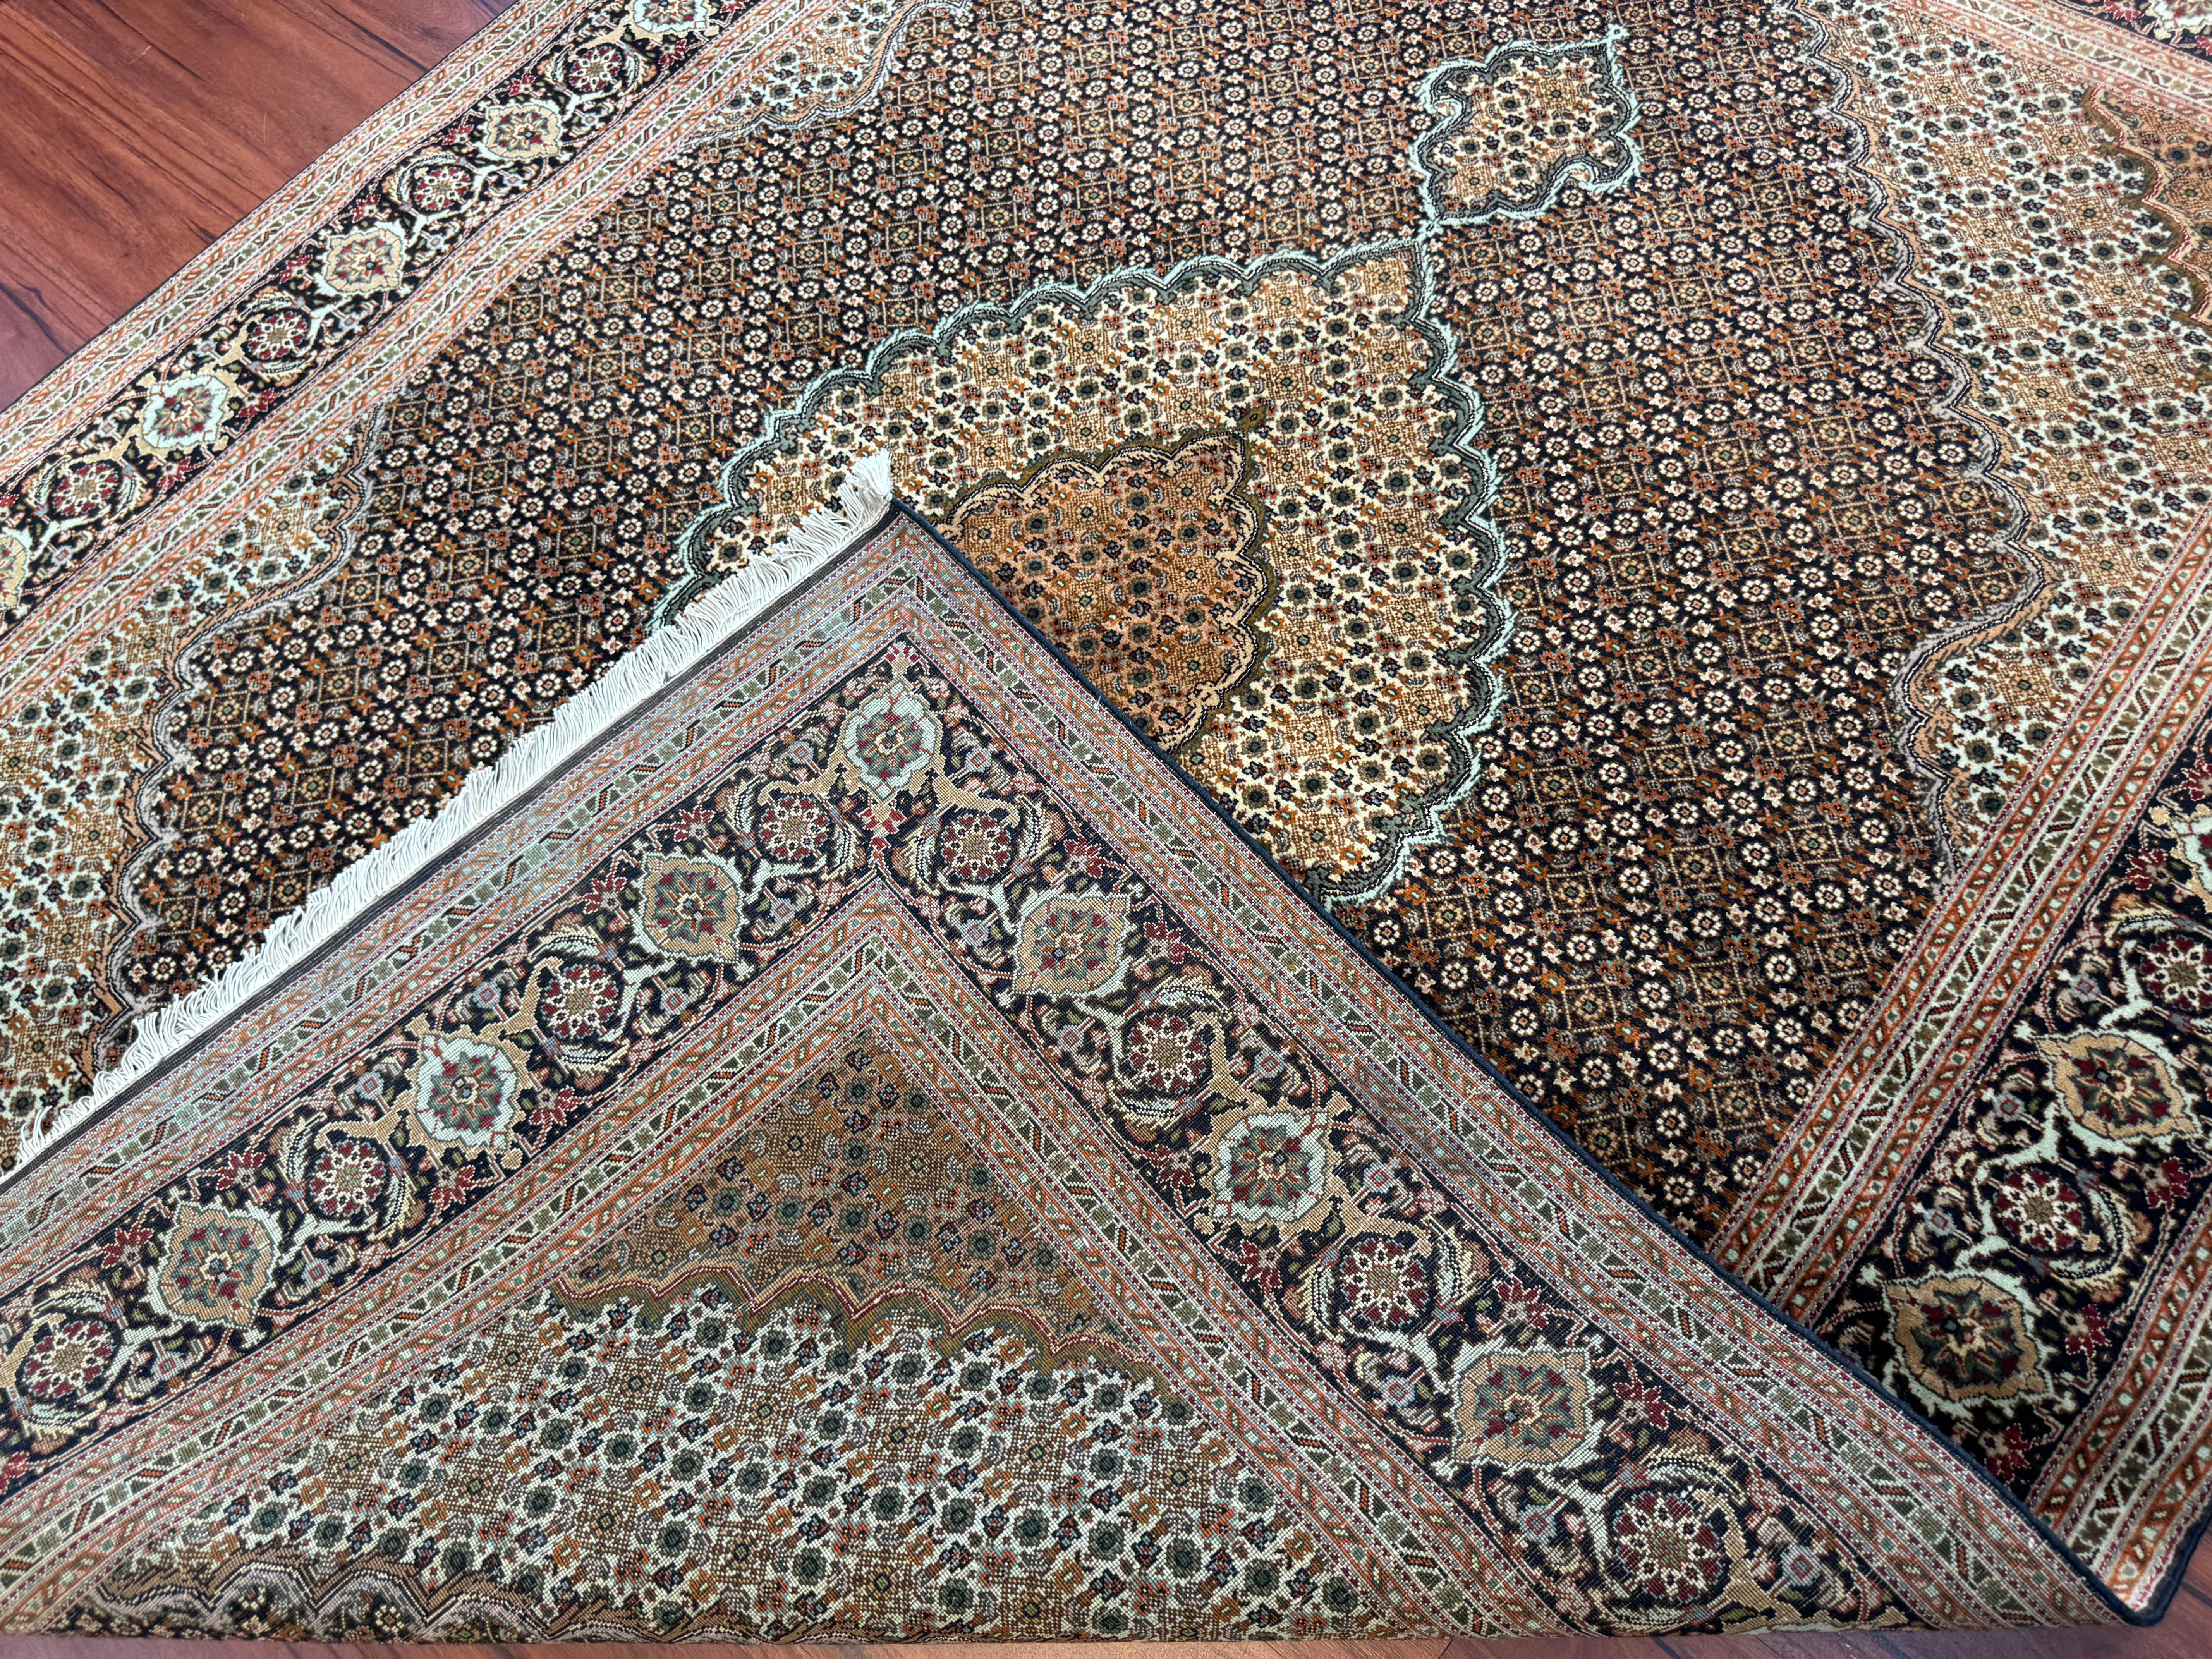 Un superbe tapis persan vintage Tabriz Mahi, originaire d'Iran au milieu du 20ème siècle. Ce tapis est en excellent état et est composé d'une combinaison de laine, de soie et de coton. Magnifique tapis dont les couleurs et le design sont à couper le